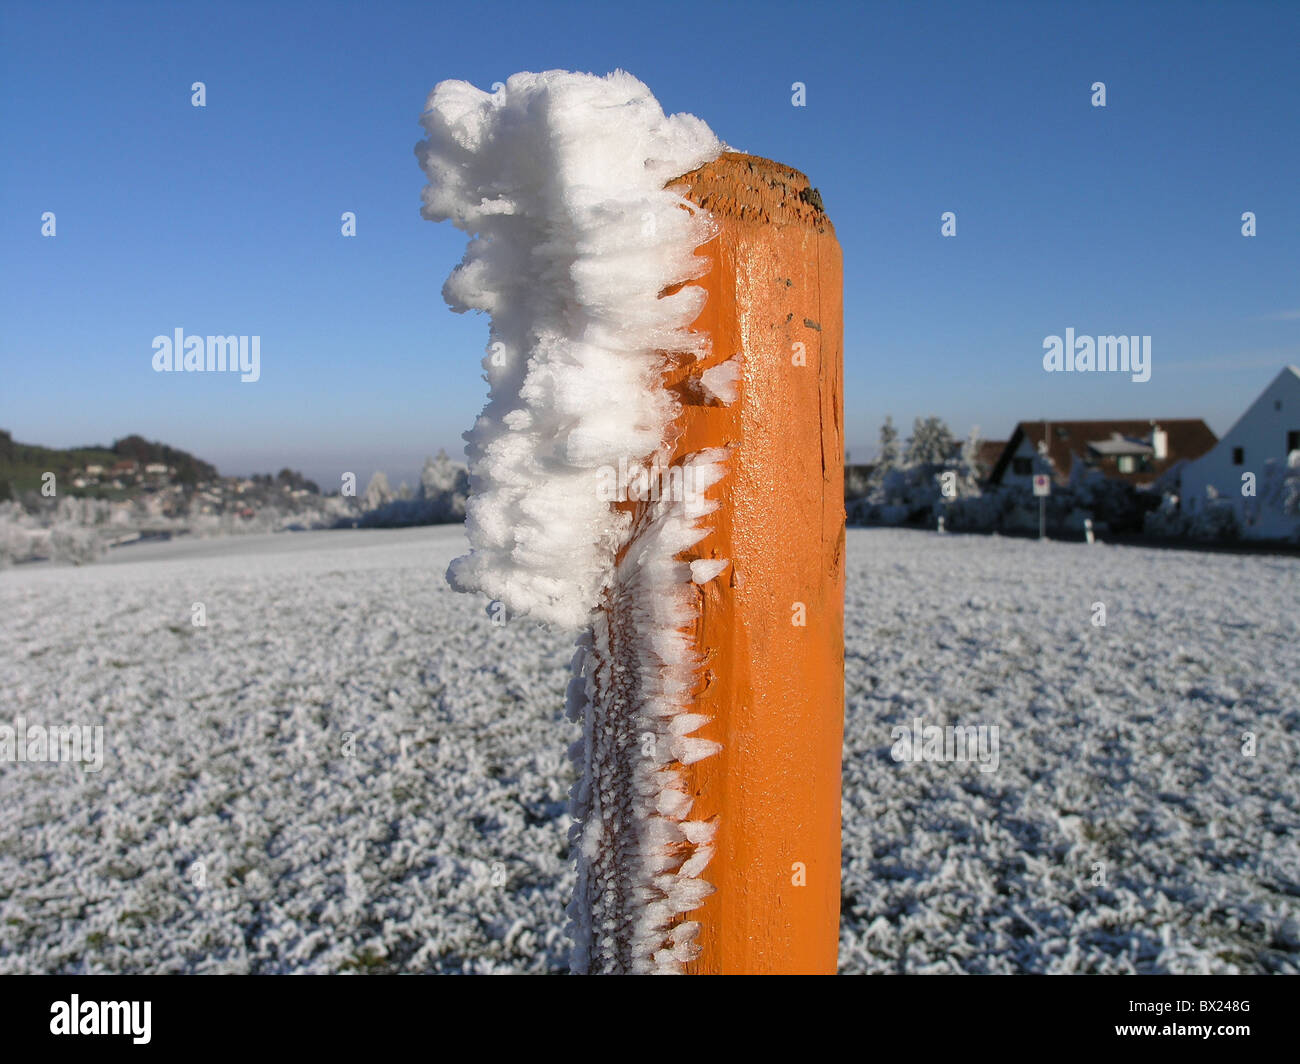 Marques de champs hill jambage poster posts déneigement rue neige hiver façon Suisse Europe Banque D'Images